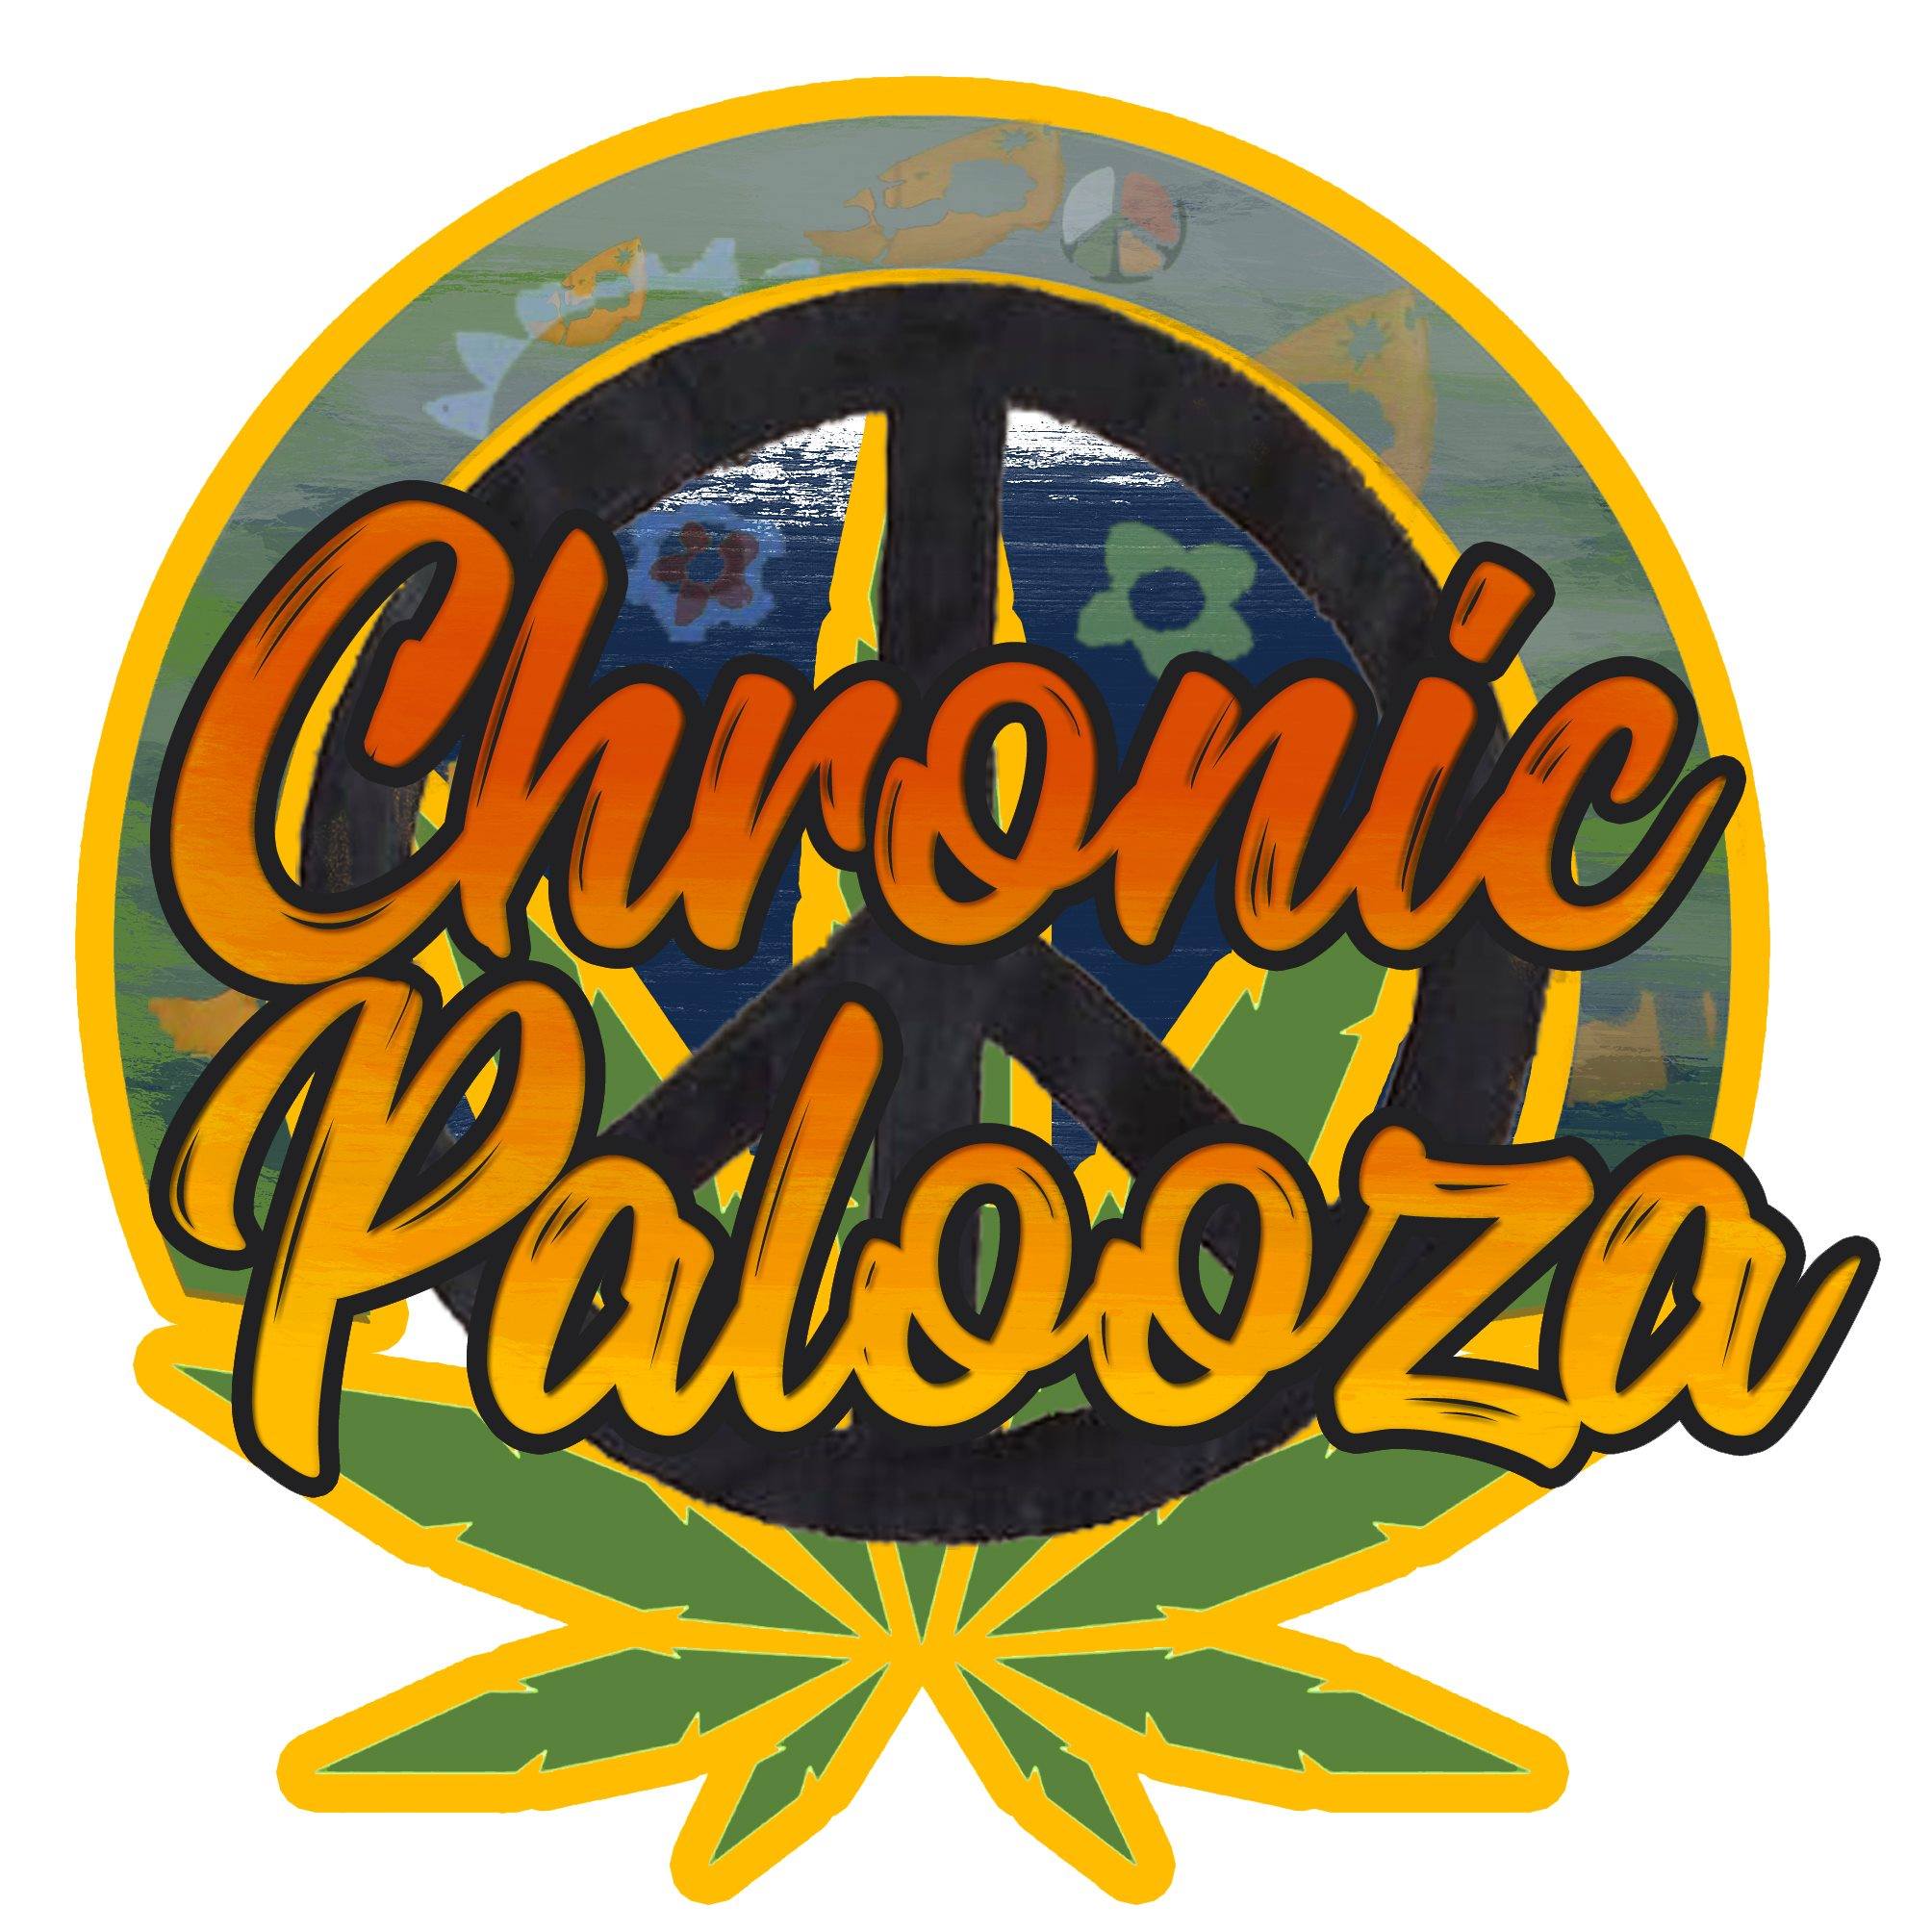 Load video: Chronic Palooza at Crossroads